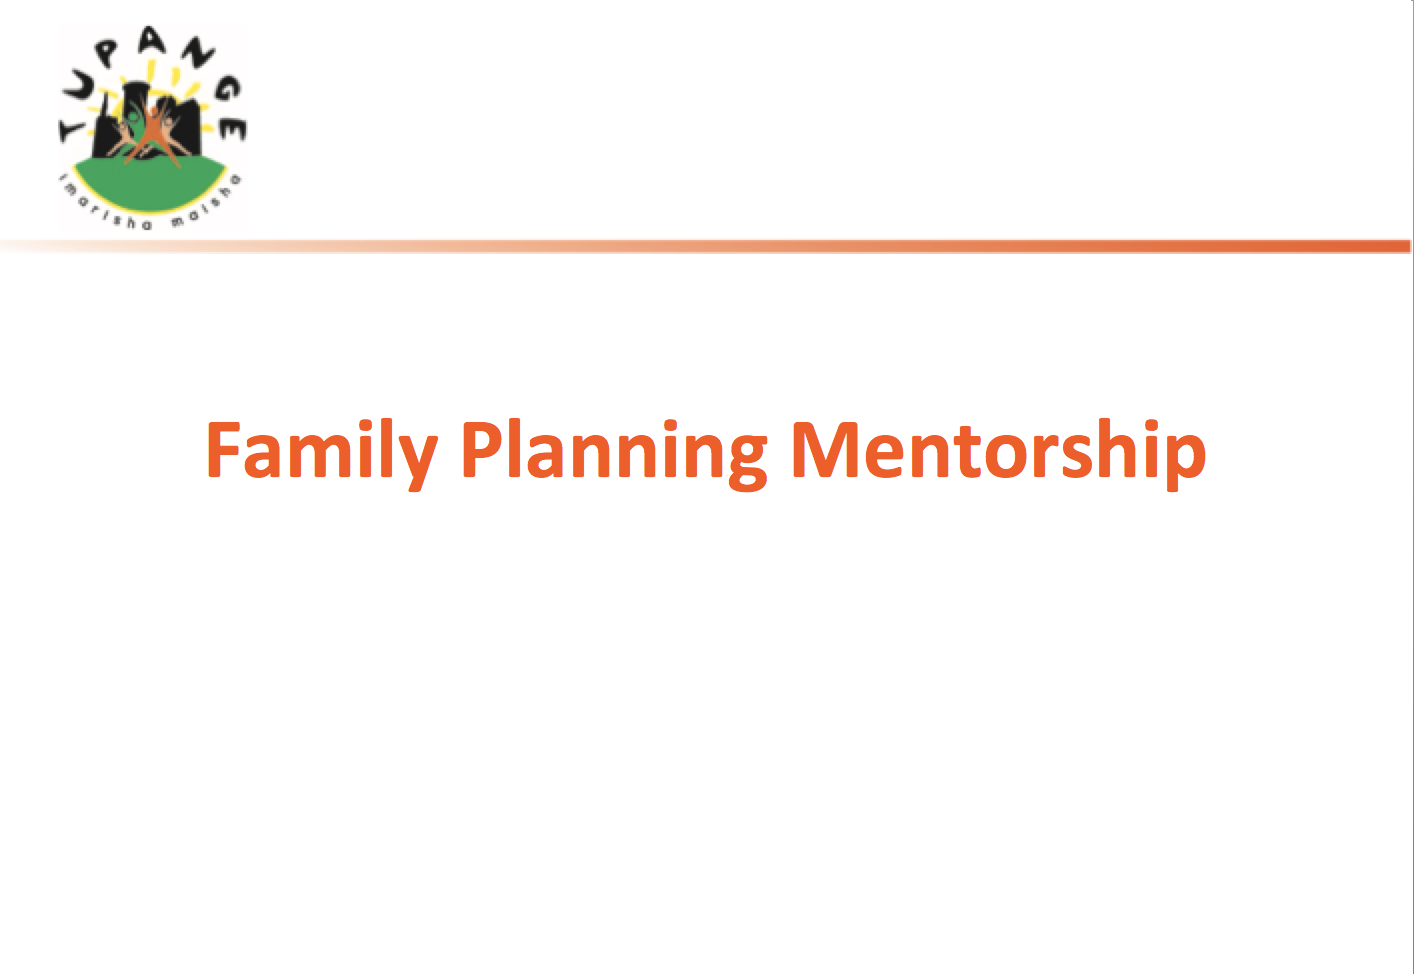 Présentation de formation sur la planification familiale à l'initiative des prestataires de services